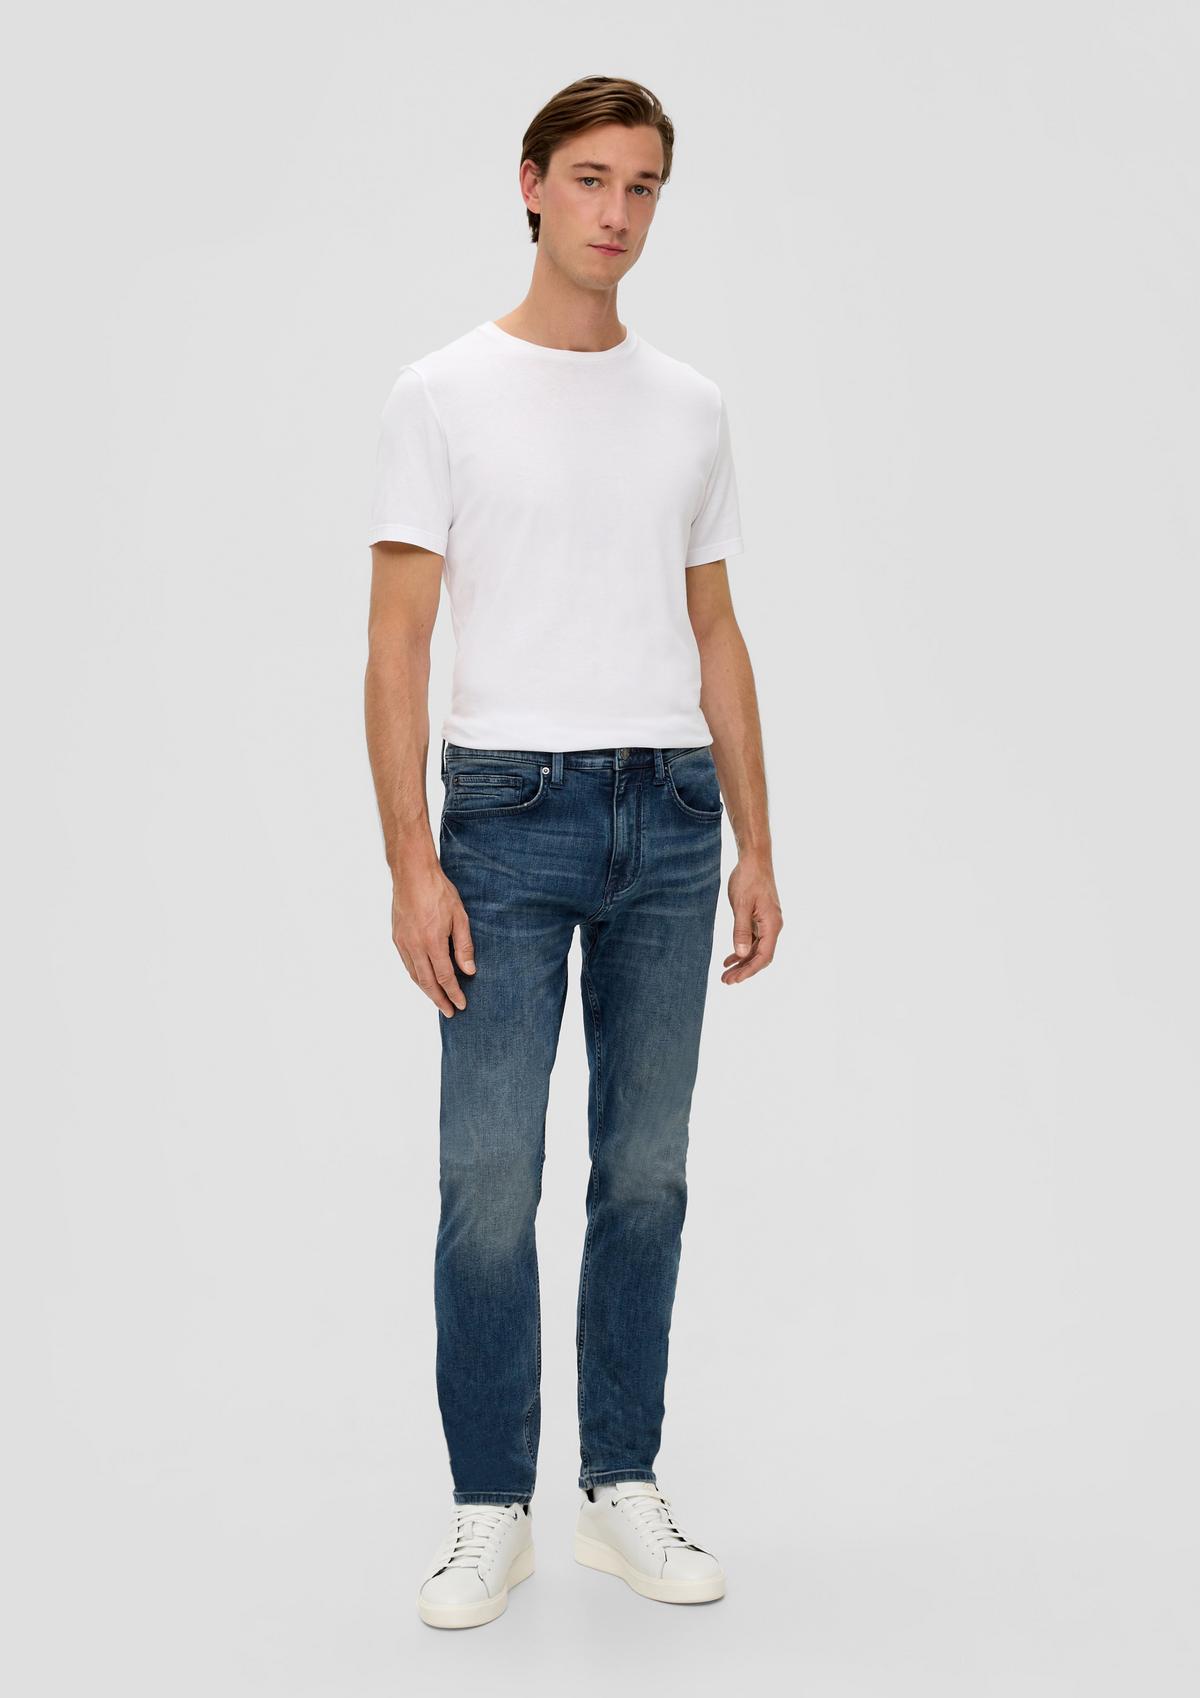 s.Oliver Jeans / Regular Fit / Mid Rise / Tapered Leg / 5-Pocket-Stil